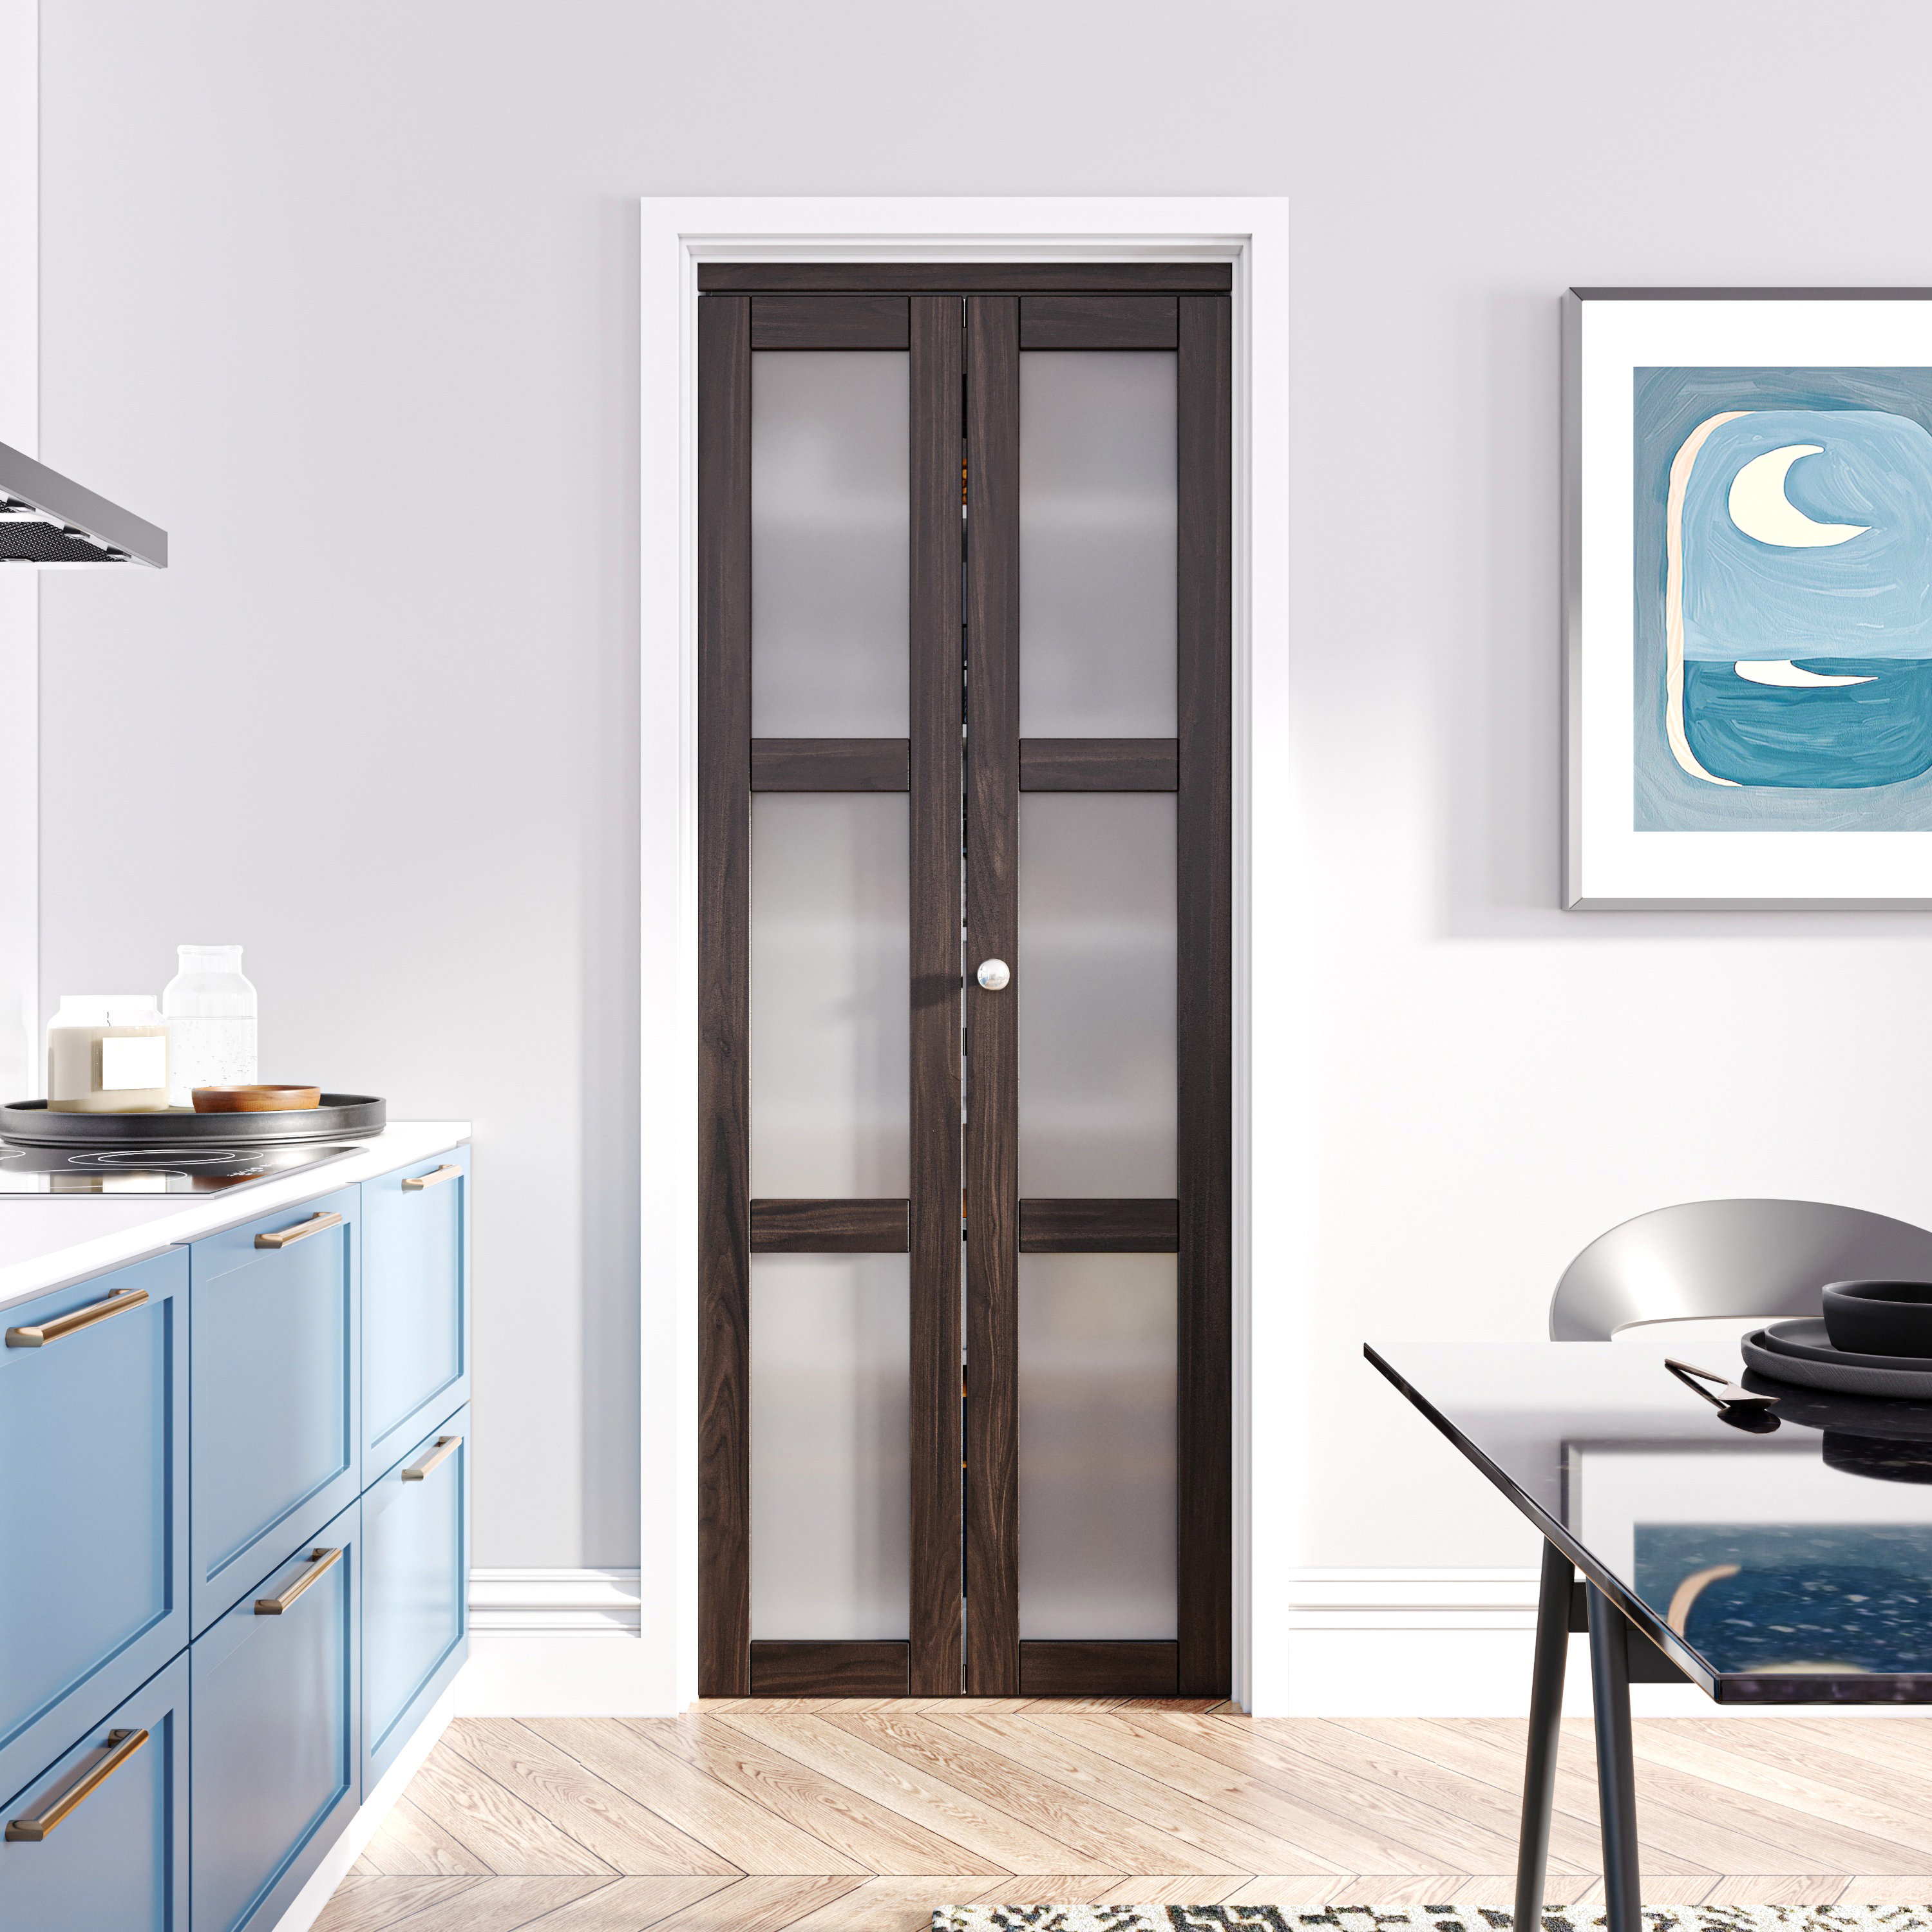 HOZONE 3-Lite Glass Wood Color Door Wayfair | Ancient Hardware Solid Installation Wood Door Bi-Fold with Manufactured